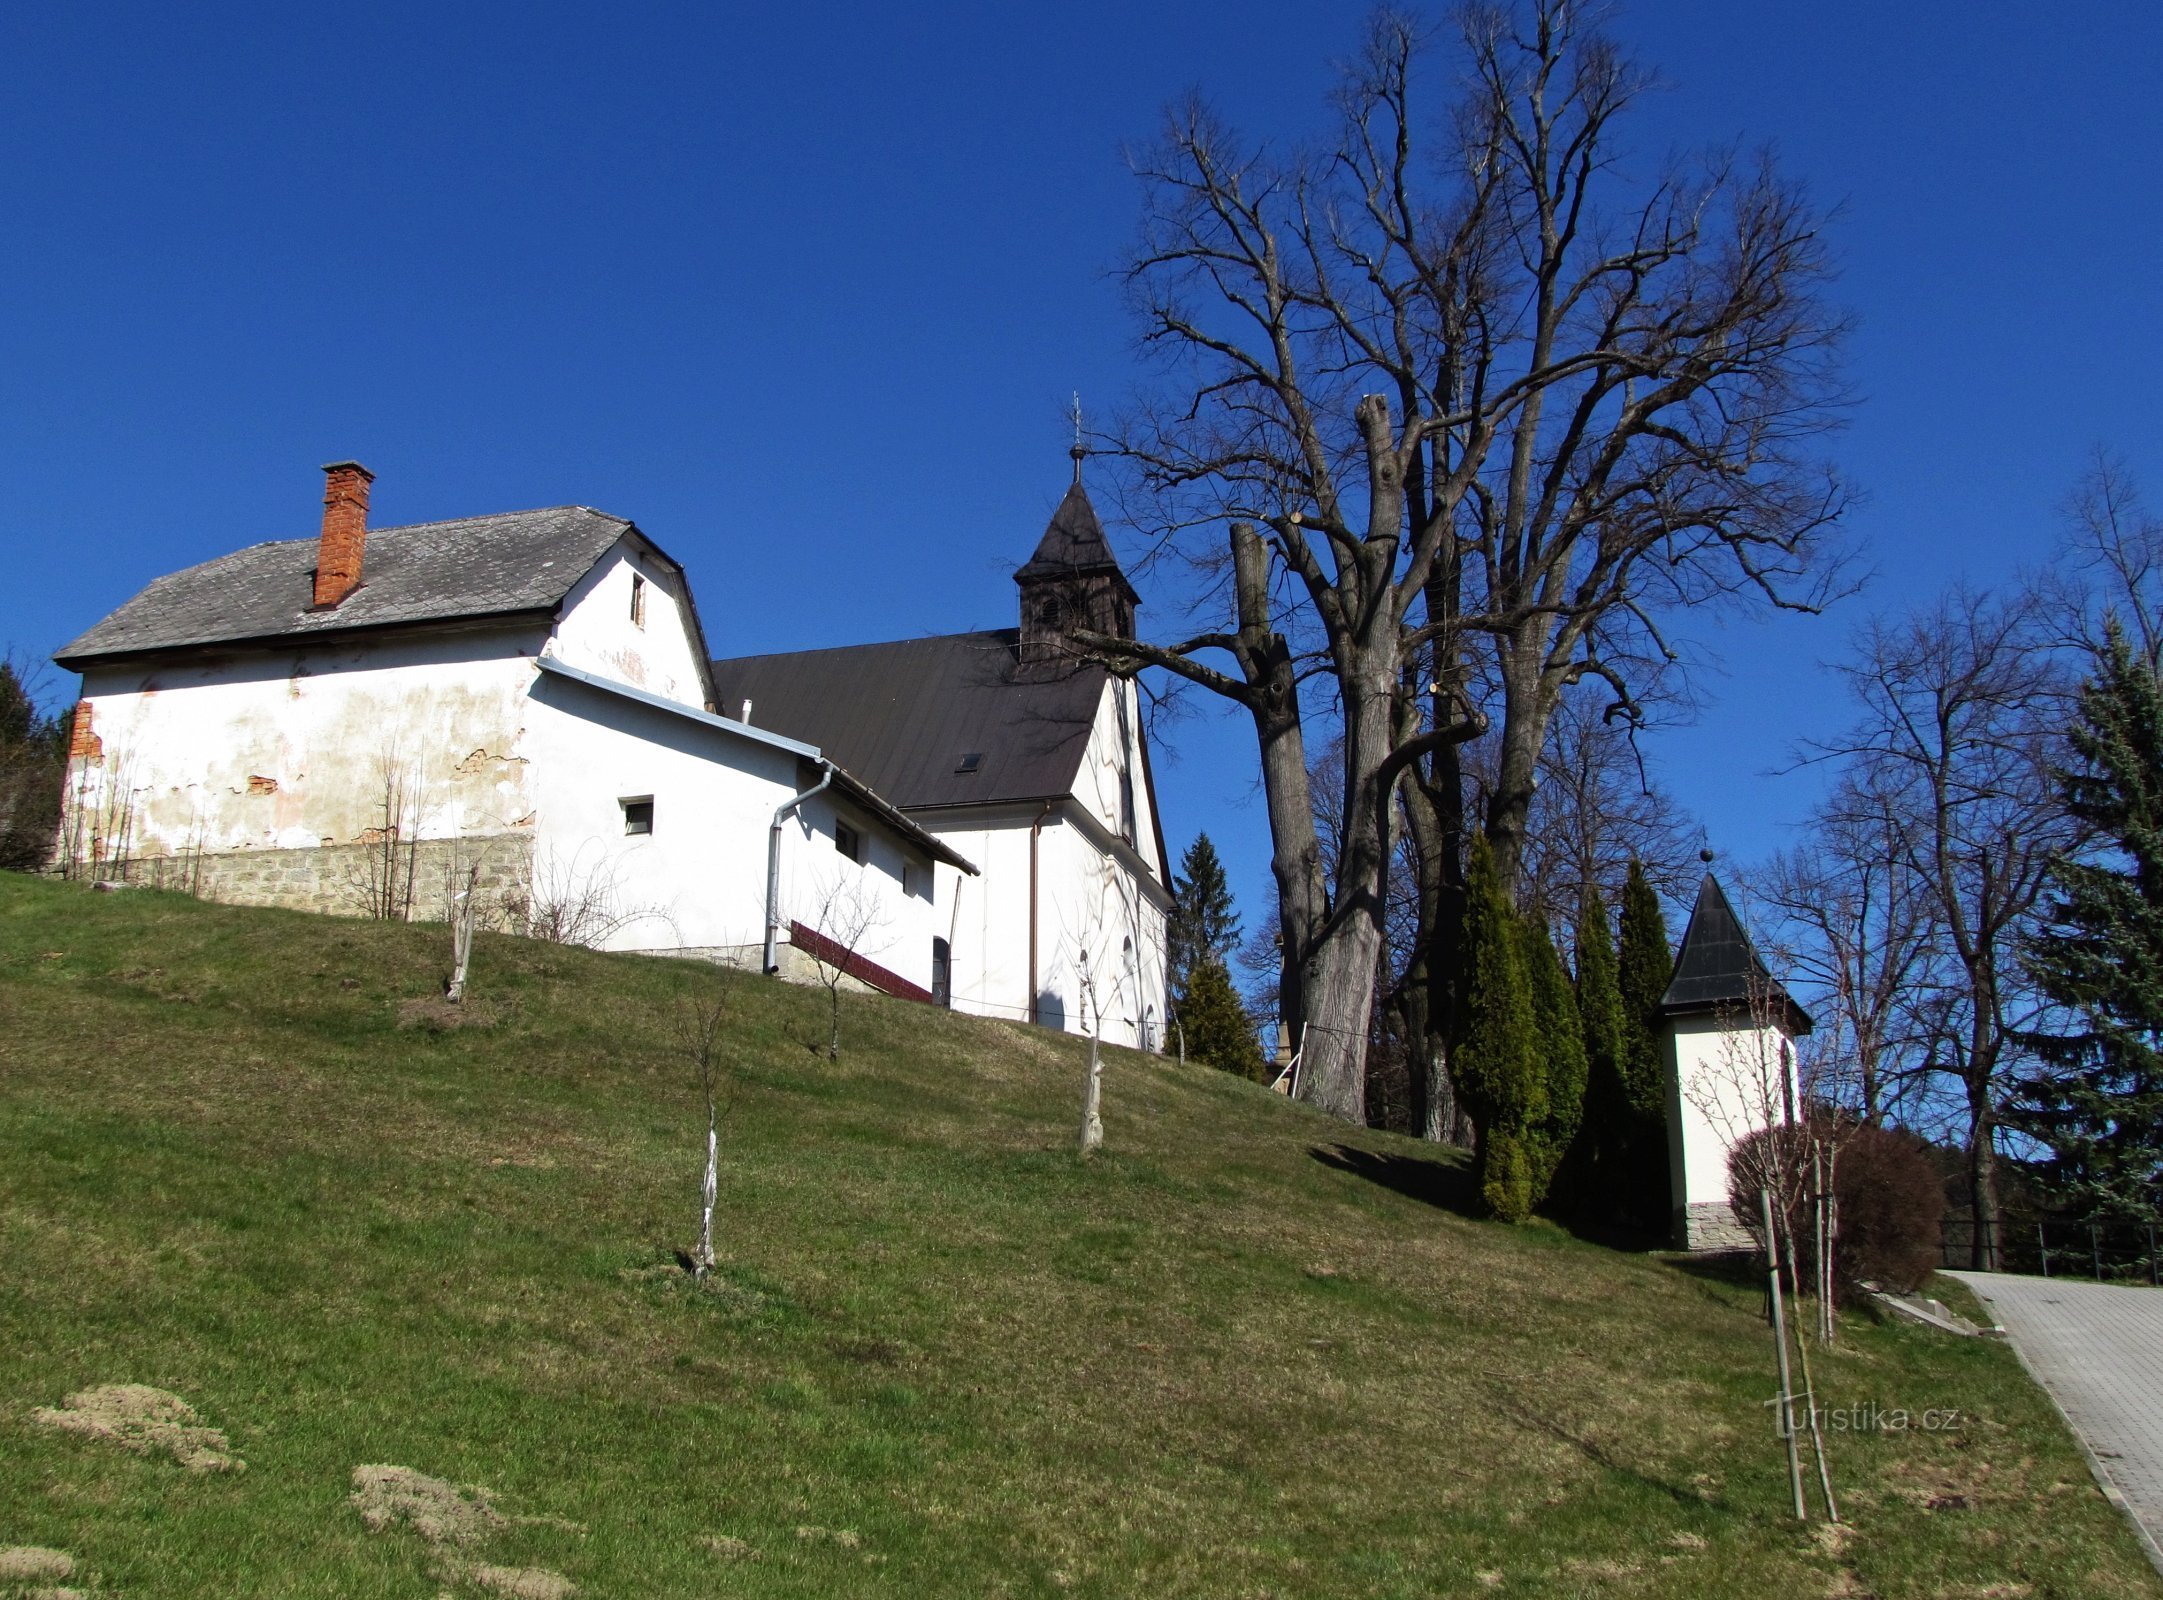 Здехов - холм с церковью Преображения Господня